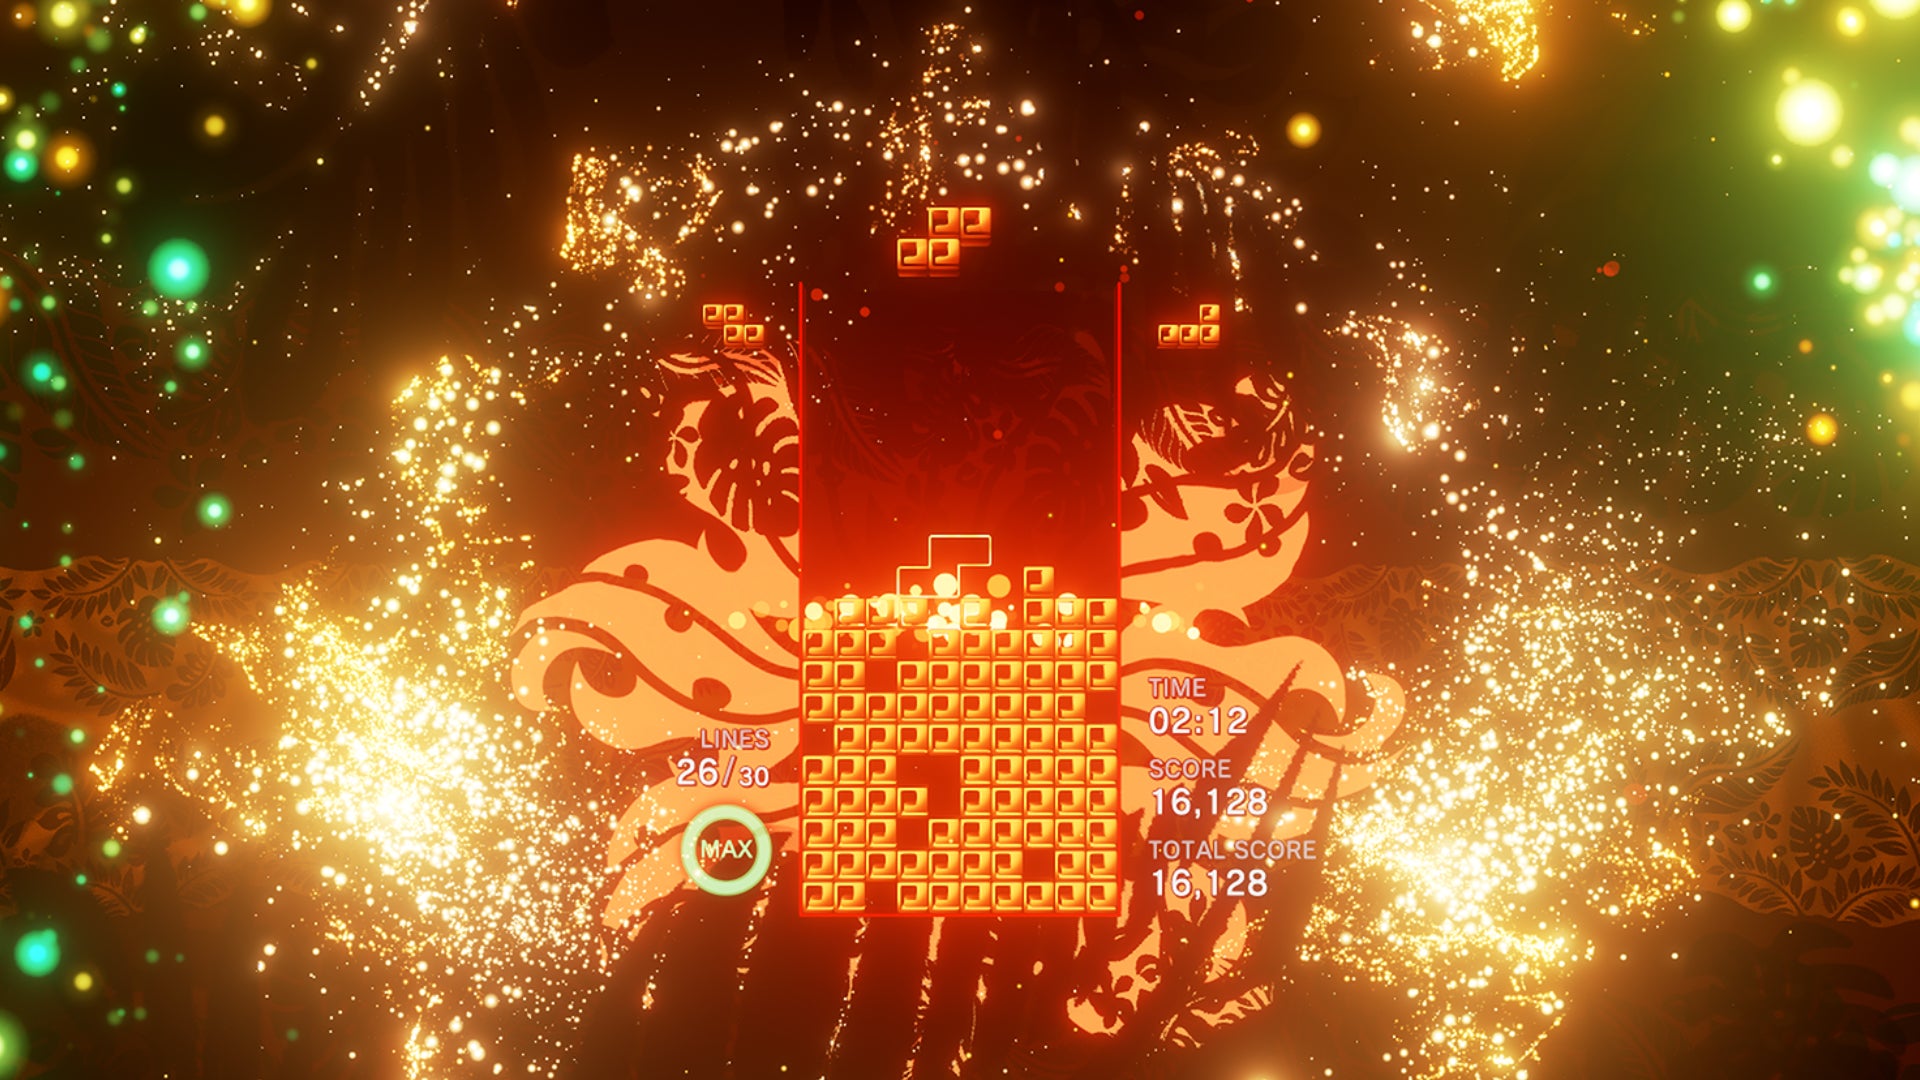 A screenshot from Tetris Effect.